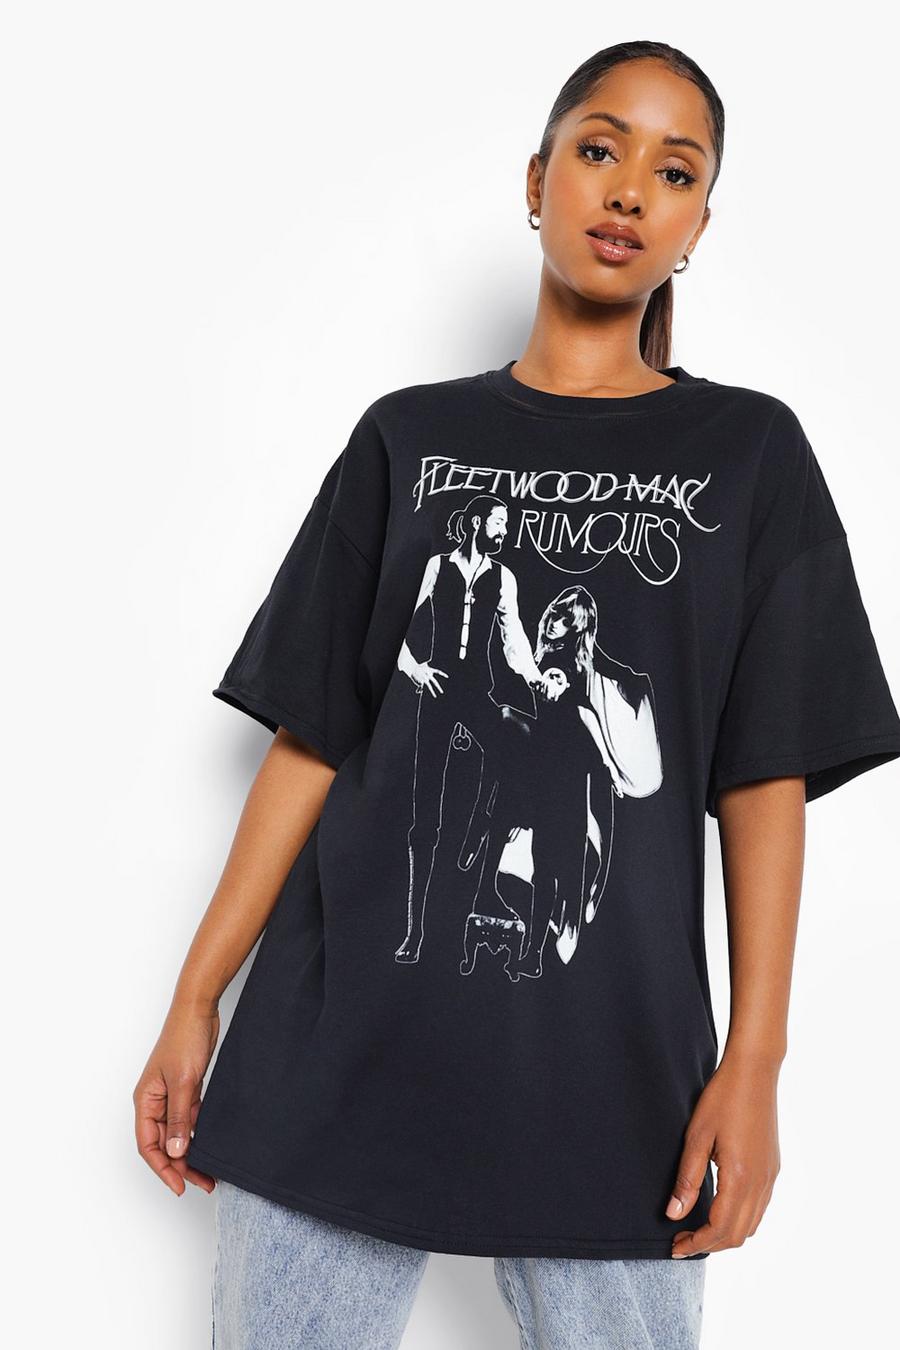 Maternité - T-shirt de grossesse à imprimé Fleetwood Mac, Black